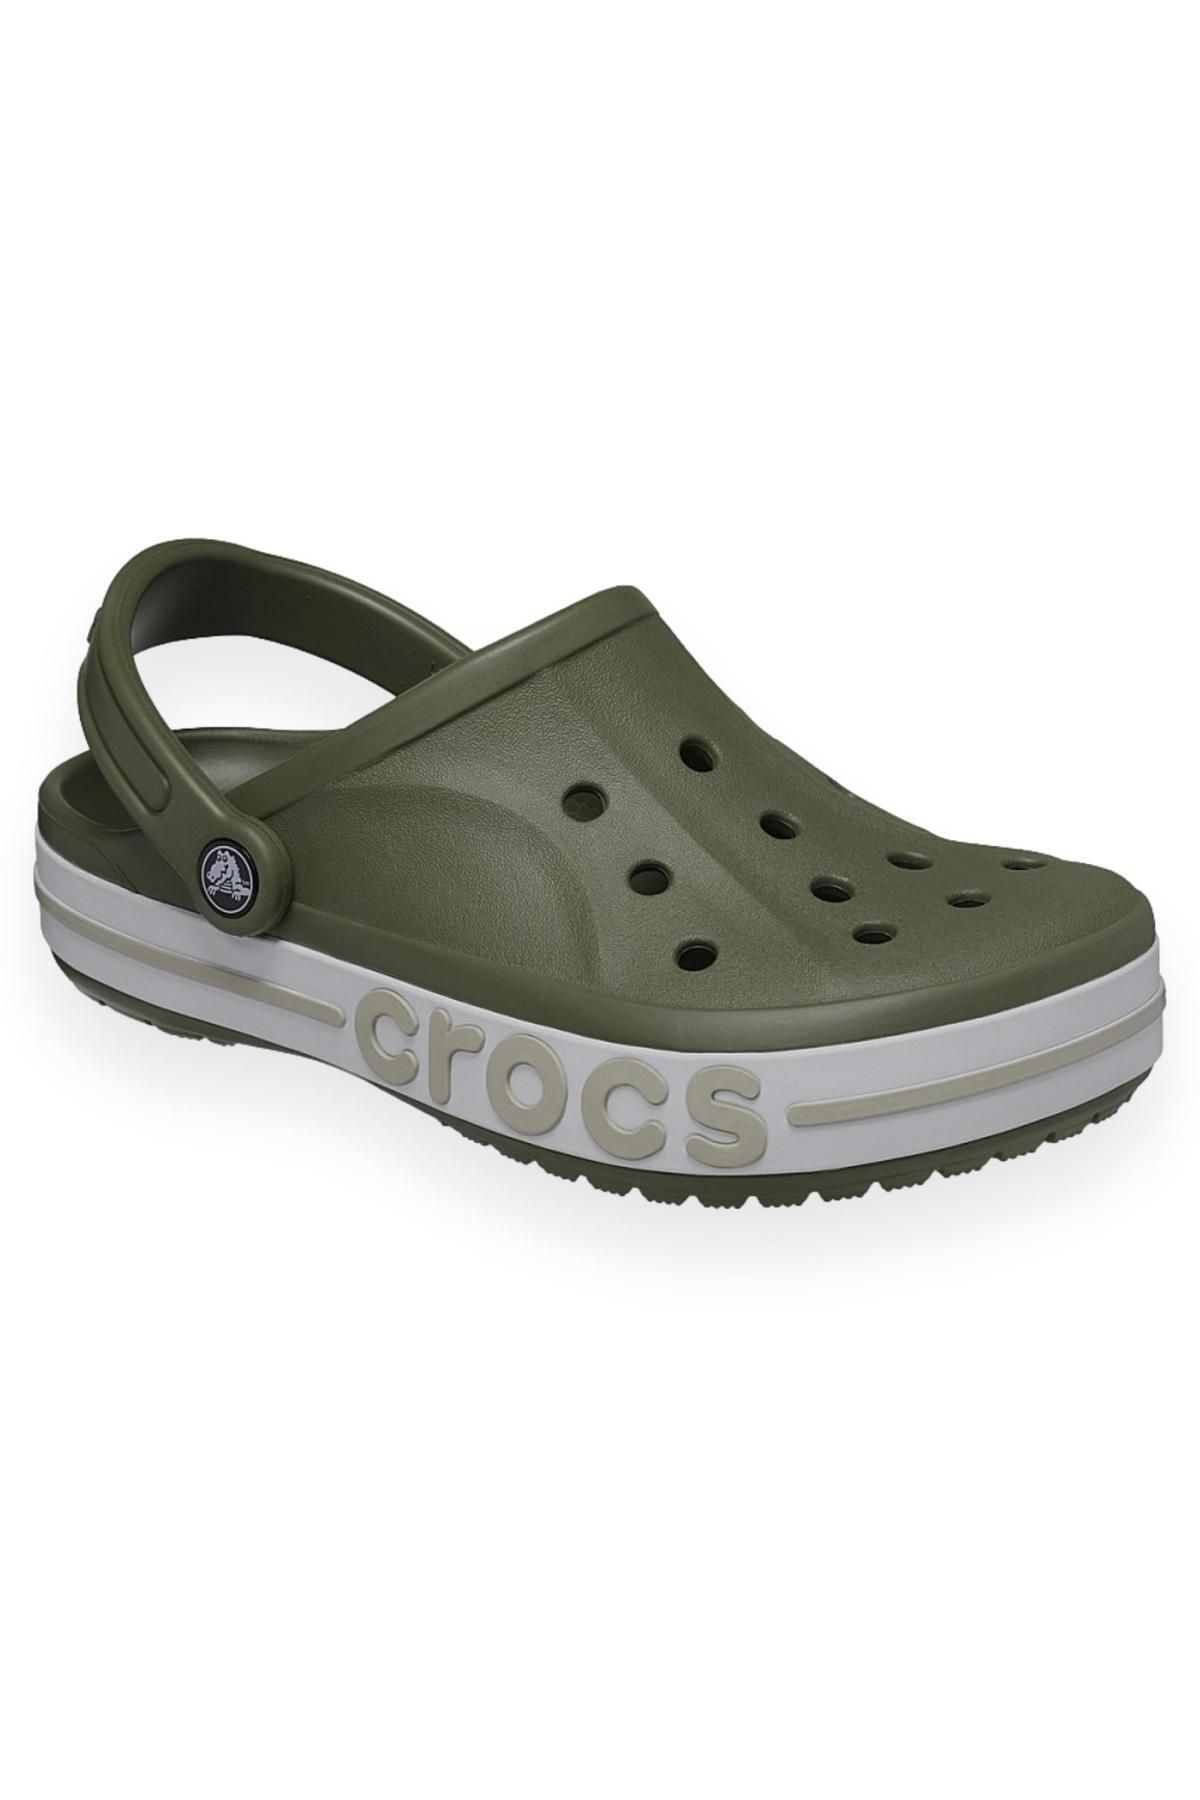 Crocs 205089 Bayaband Clog Haki Erkek Terlik